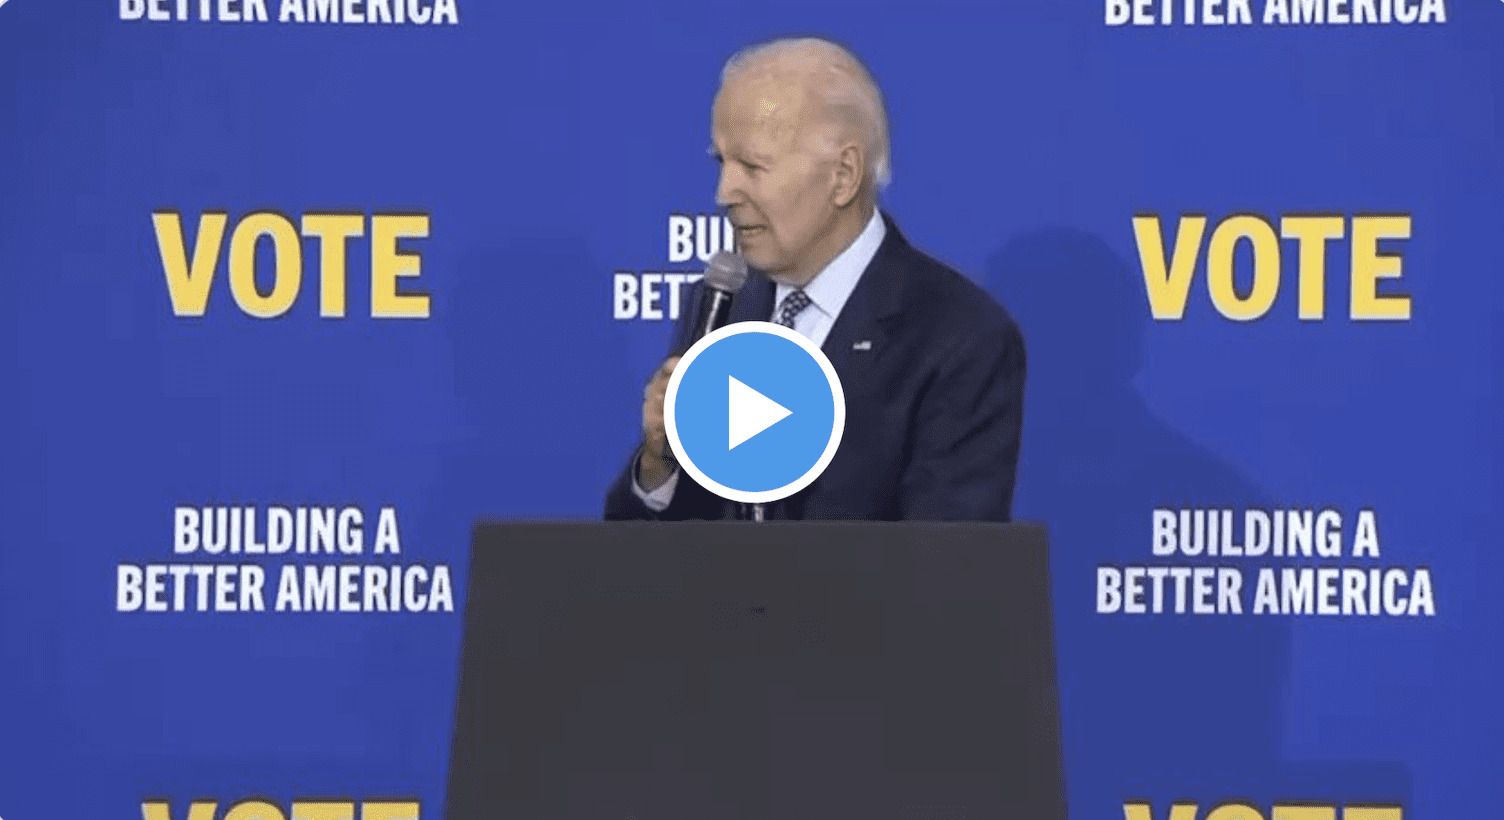 Joe Biden Gives Pathetic Last-Ditch Effort Speech...